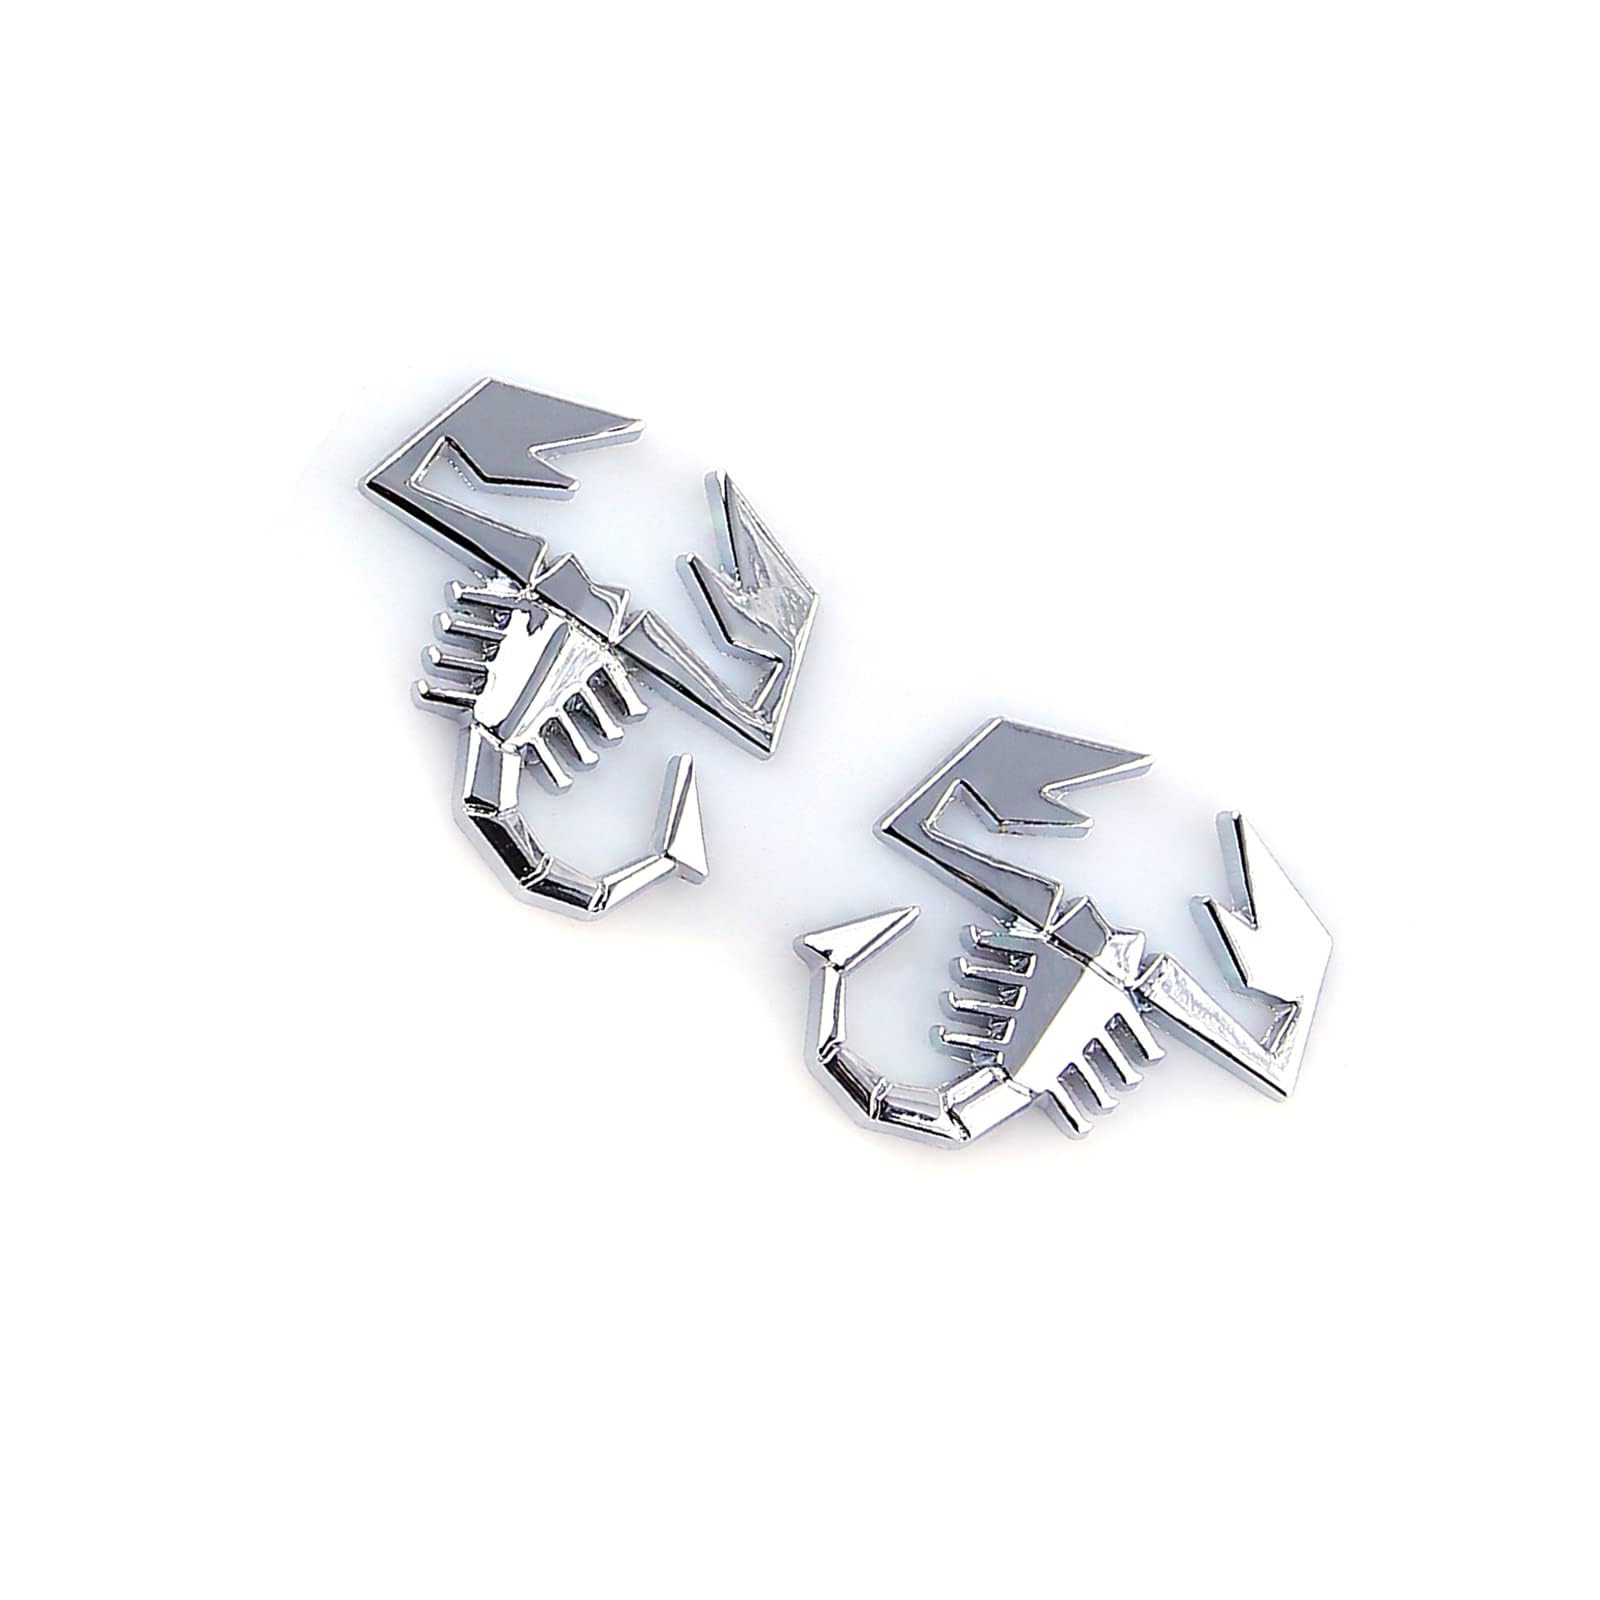 2 Stück 3D Skorpion Form Emblem Metall Aufkleber Einzigartige dekorative Abzeichen für Autos, LKWs, SUVs, Tumbler, Laptops, Autoscheiben (Silber) Auto-Styling-Aufkleber, selbstklebende Dekor-Aufkleber von Unifizz